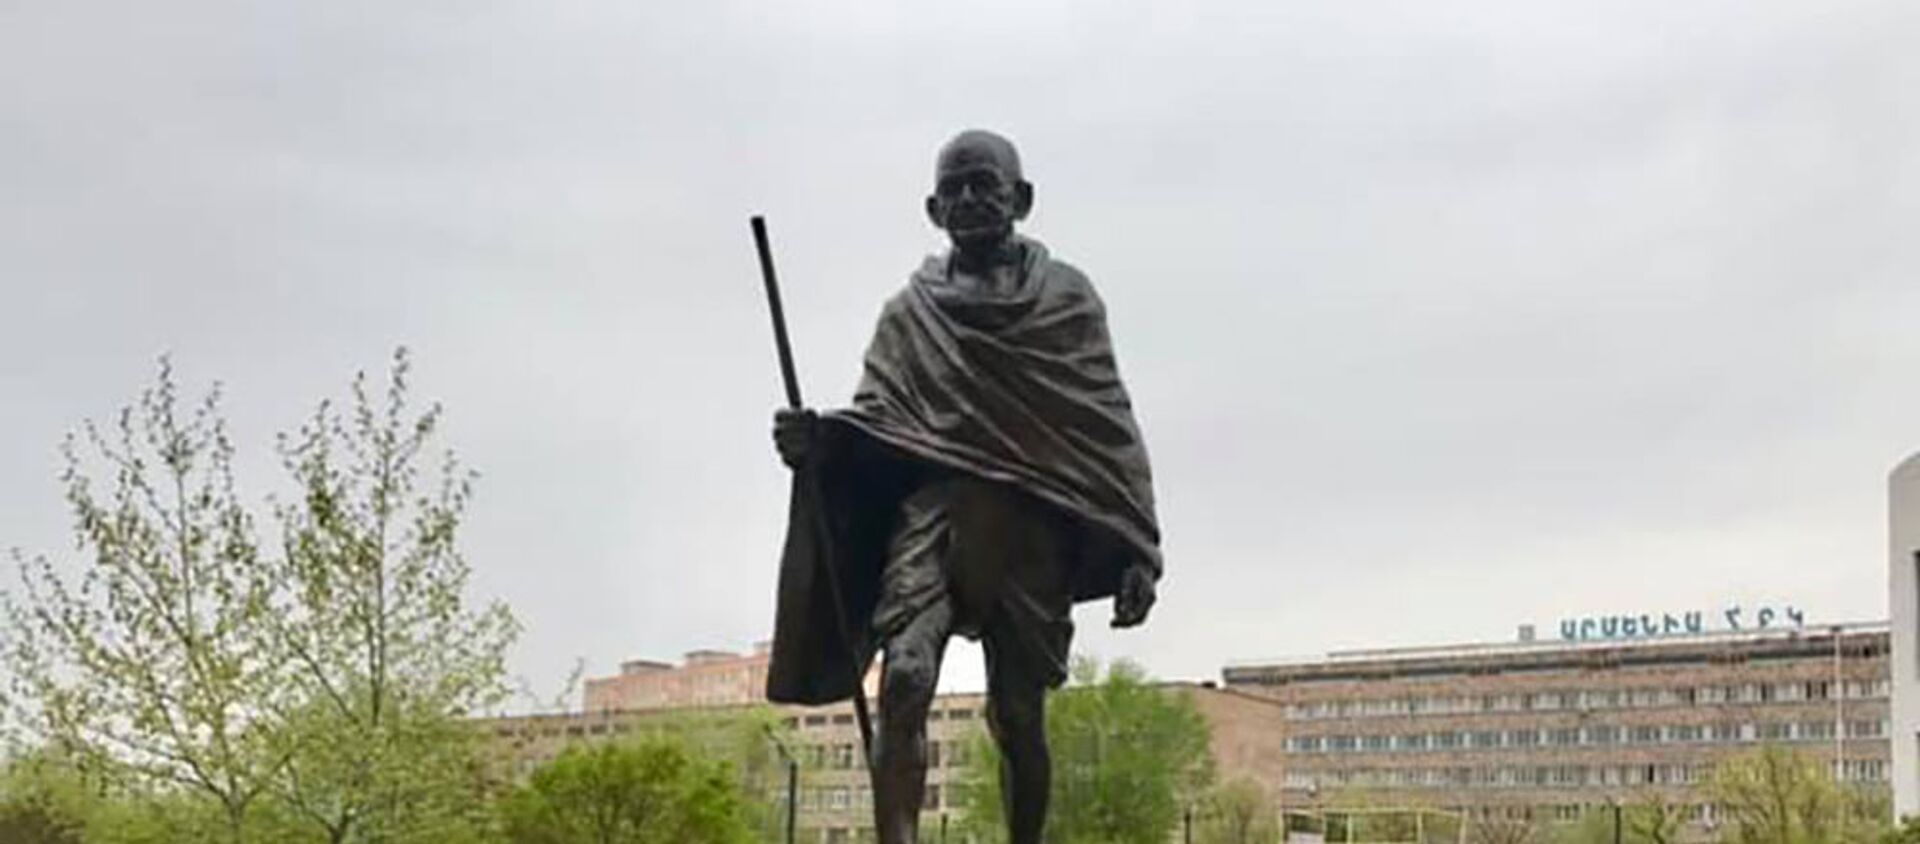 Памятник Махатме Ганди в общине Ачапняк в Ереване - Sputnik Армения, 1920, 29.04.2021